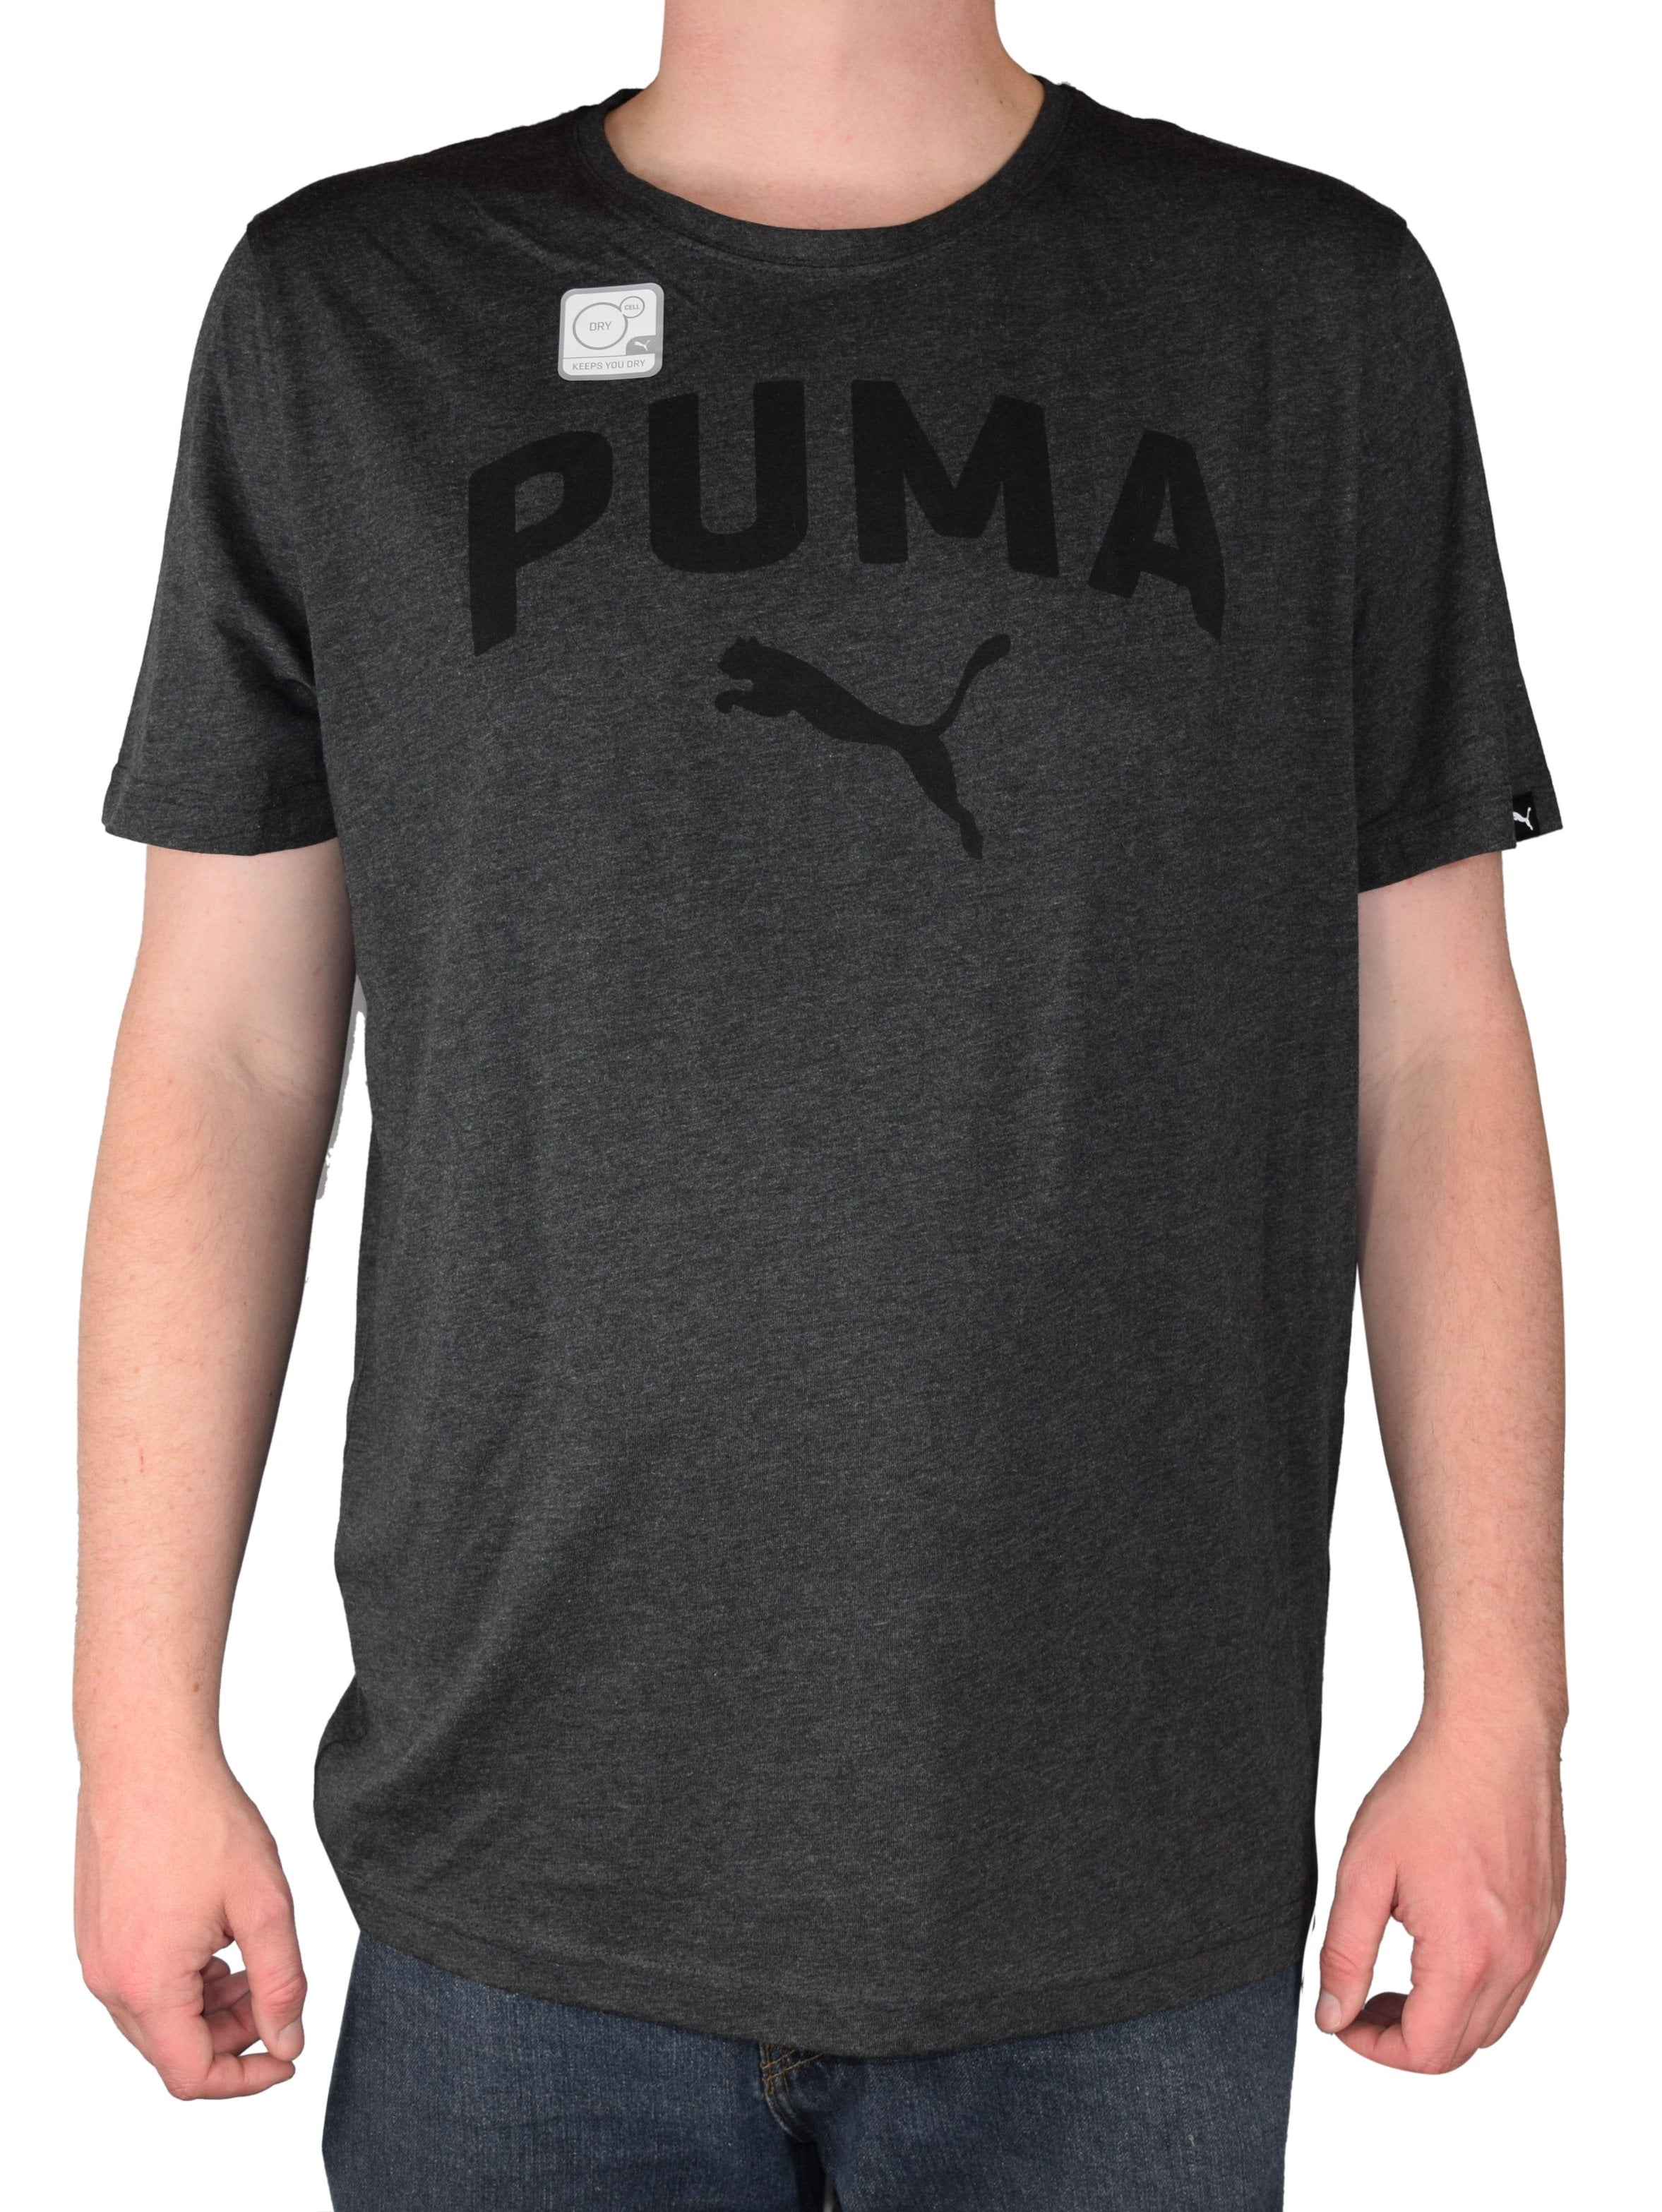 PUMA - Mens Authentic Puma Crew Neck Dry Cell Retro ...